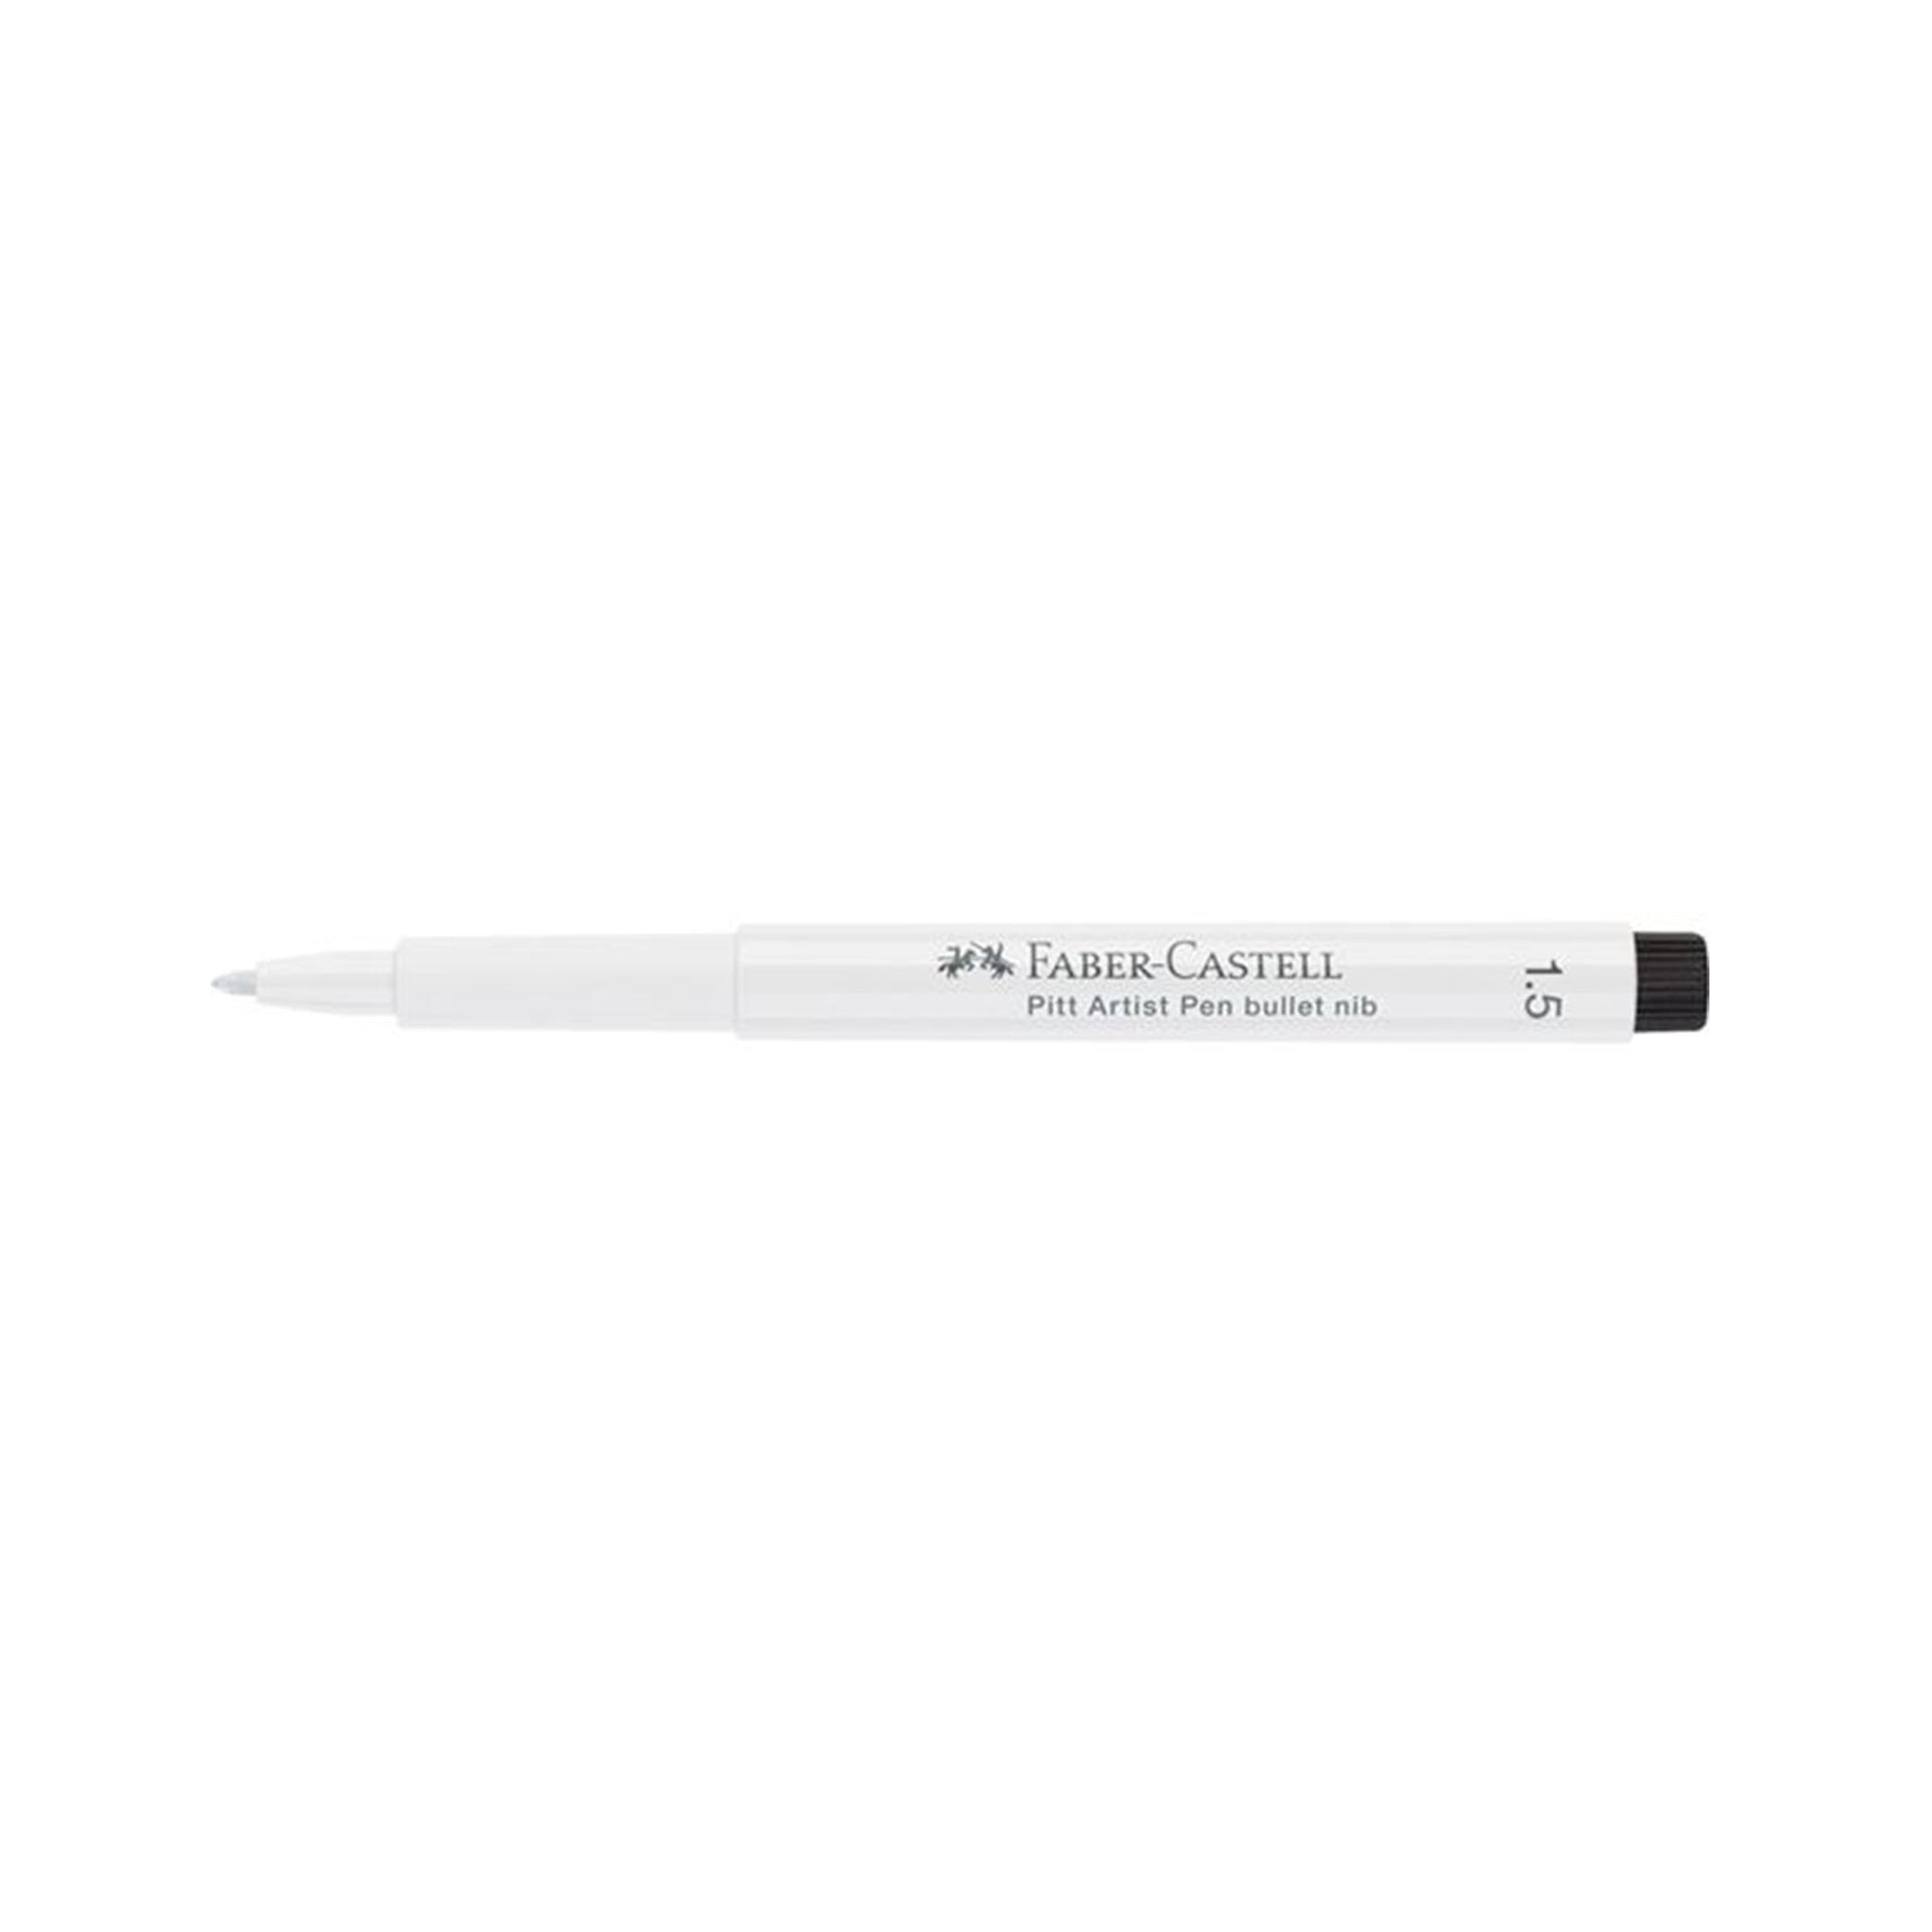 FaberCastell White Pitt Artist Pen, 1.5mm Bullet Nib